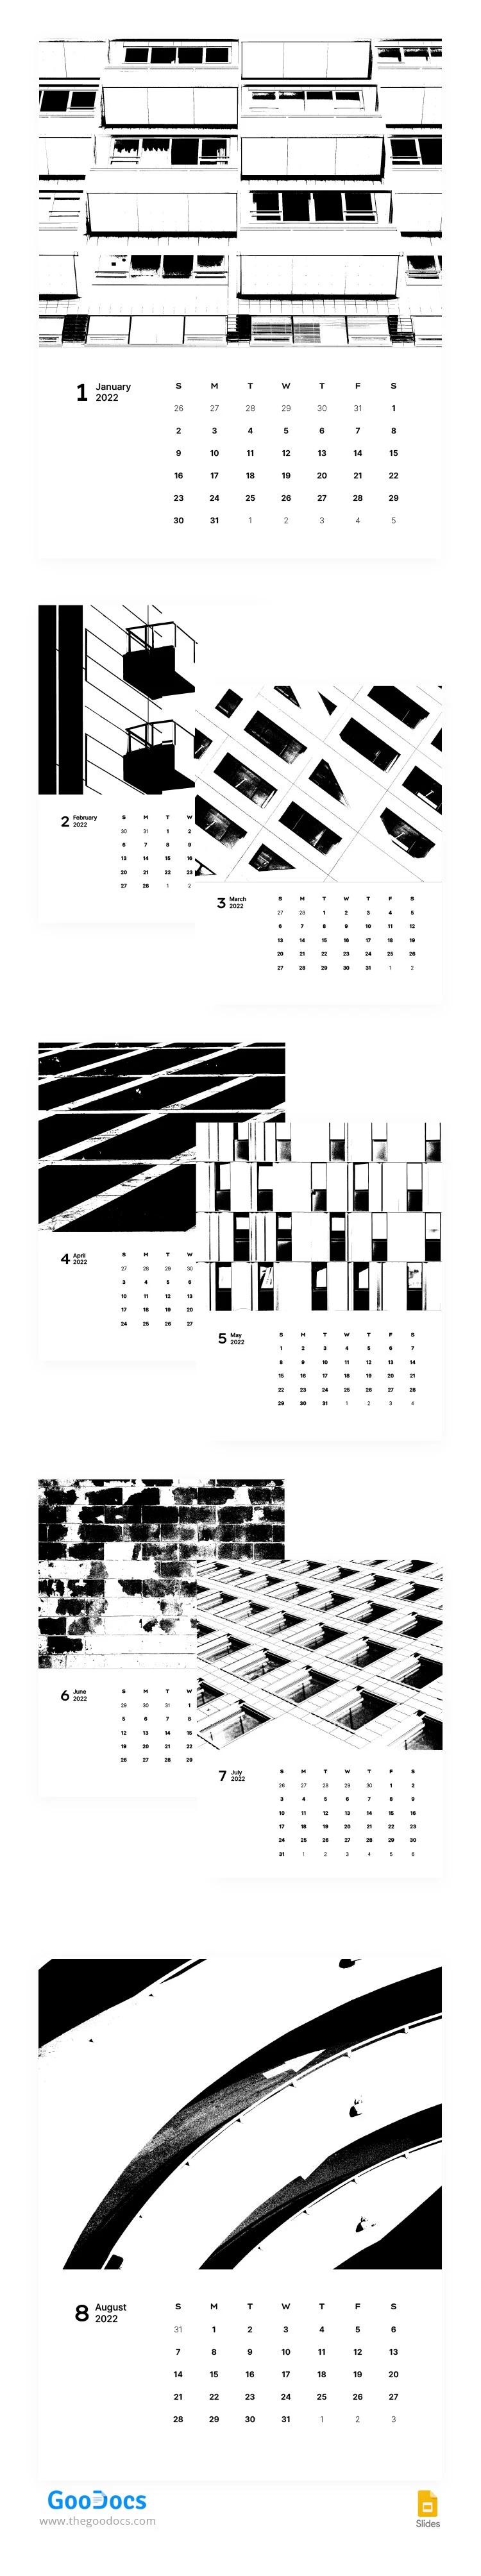 Schwarz-Weiß stilisierter Kalender - free Google Docs Template - 10063075